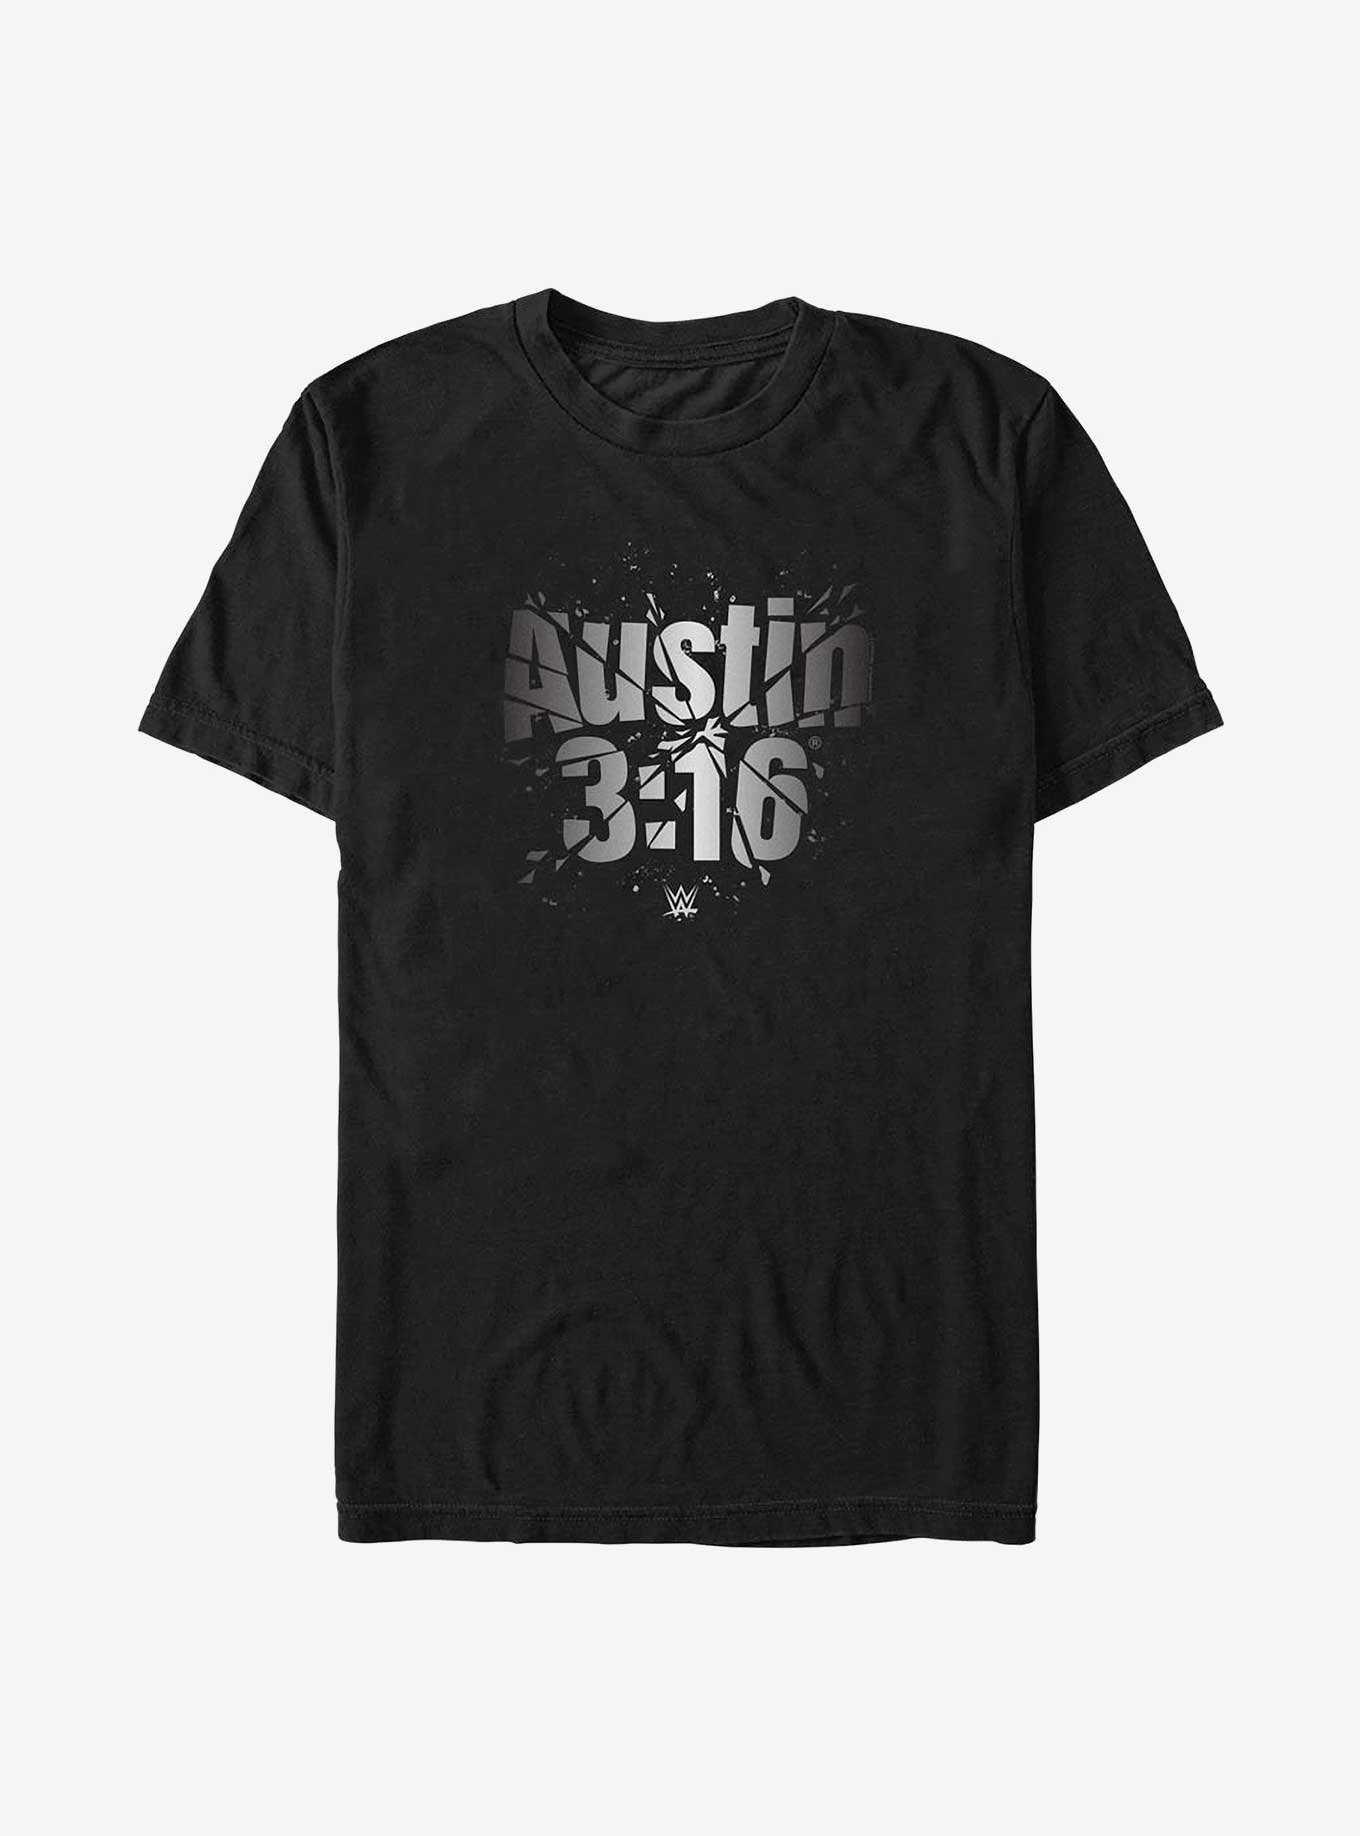 WWE Austin 3:16 Big & Tall T-Shirt, , hi-res